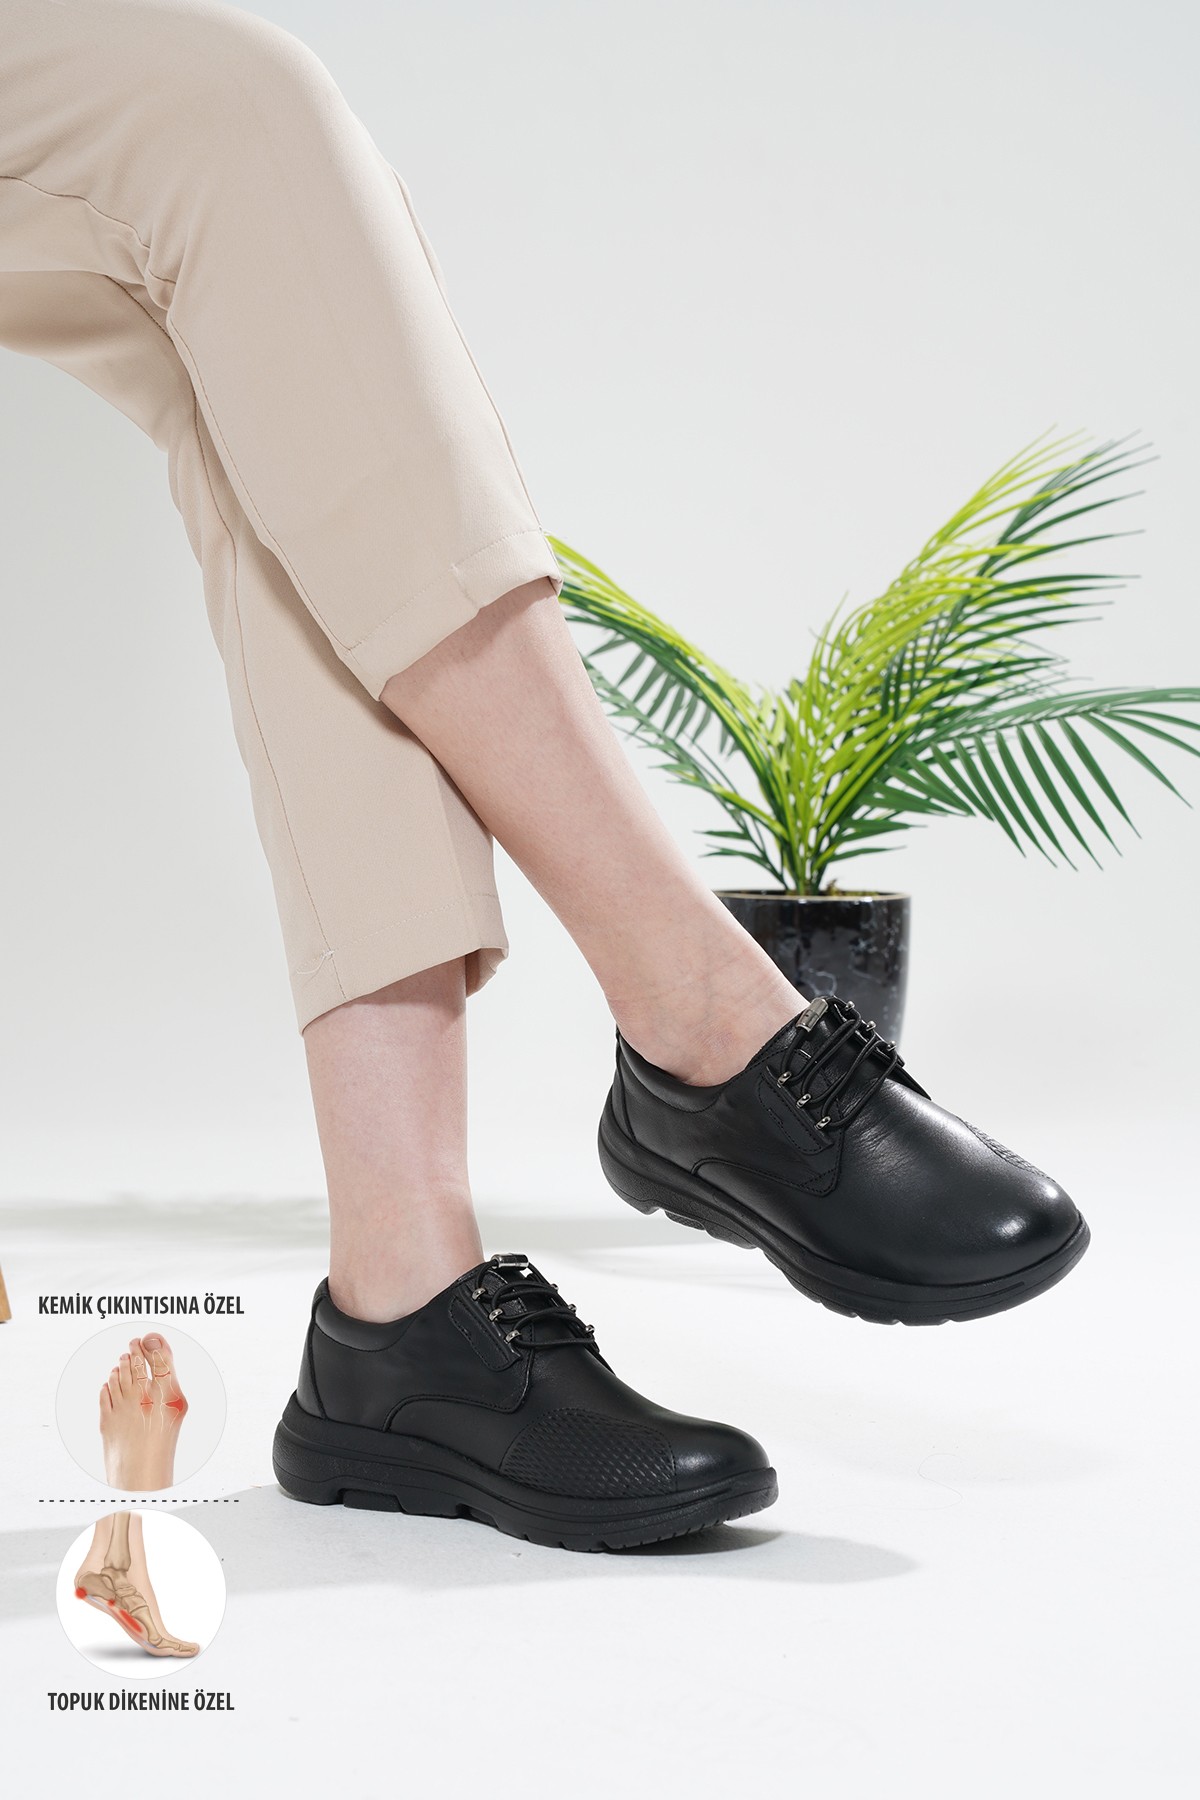 Mira Ortopedik Kadın Deri Ayakkabı Topuk Dikeni Kemik Çıkıntısı Diyabet Hastaları Ve Taraklı Ayaklar İçin Uygundur